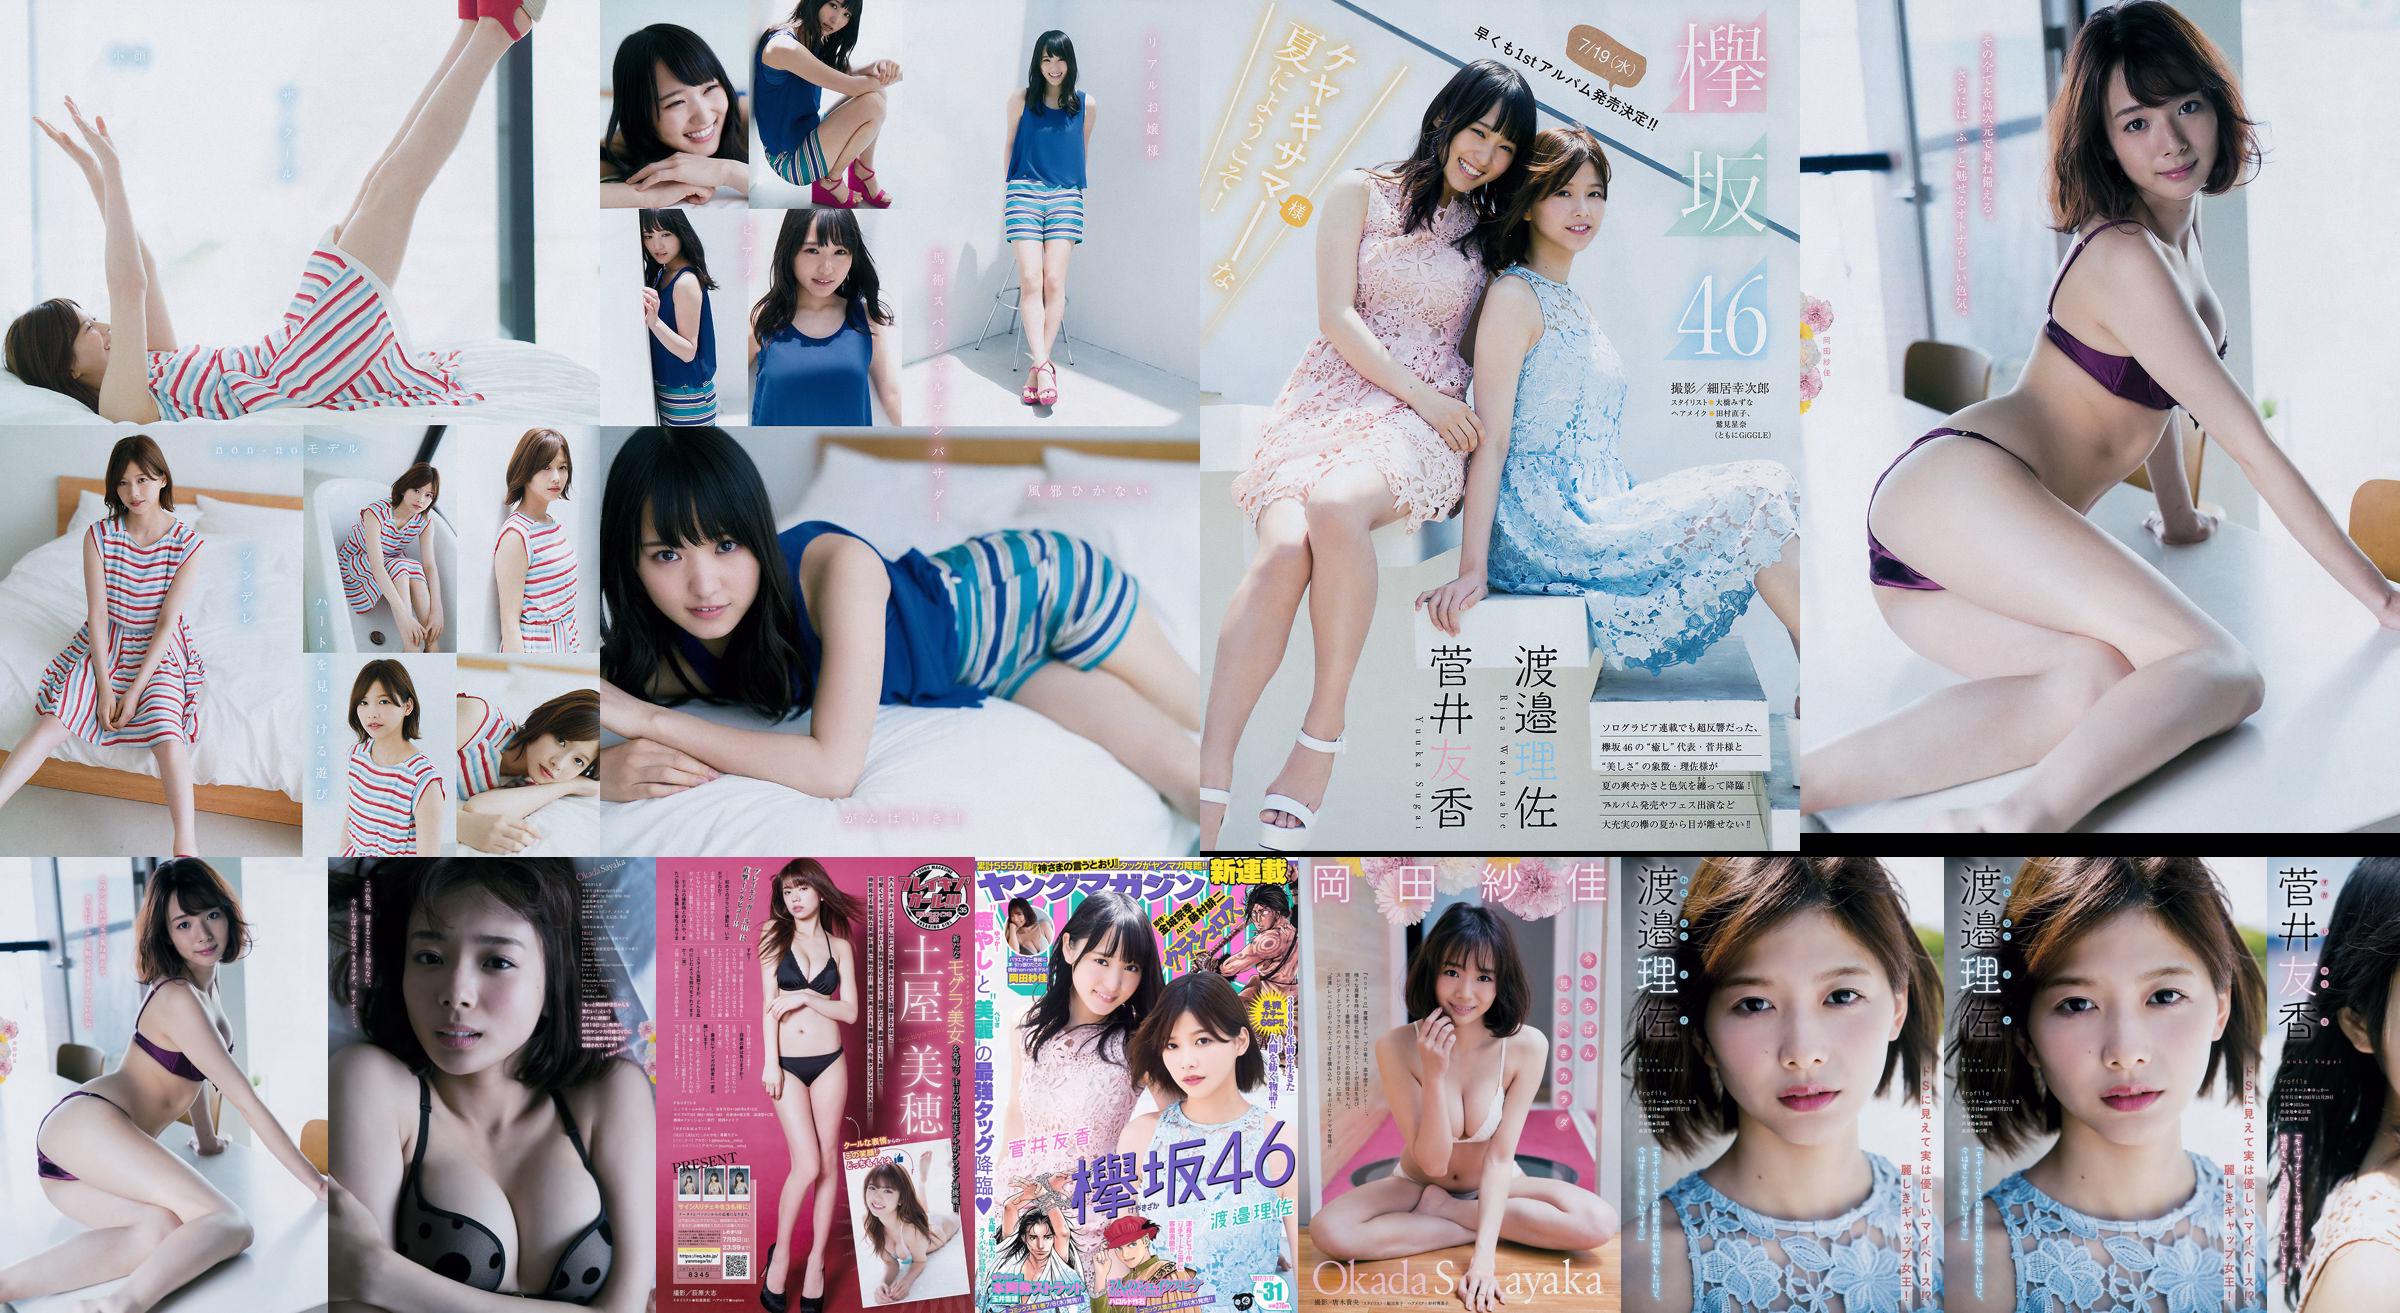 [Young Magazine] Watanabe Risa, Sugai Yuka, Okada Saika 2017 No.31 Photo Magazine No.c0133e หน้า 1